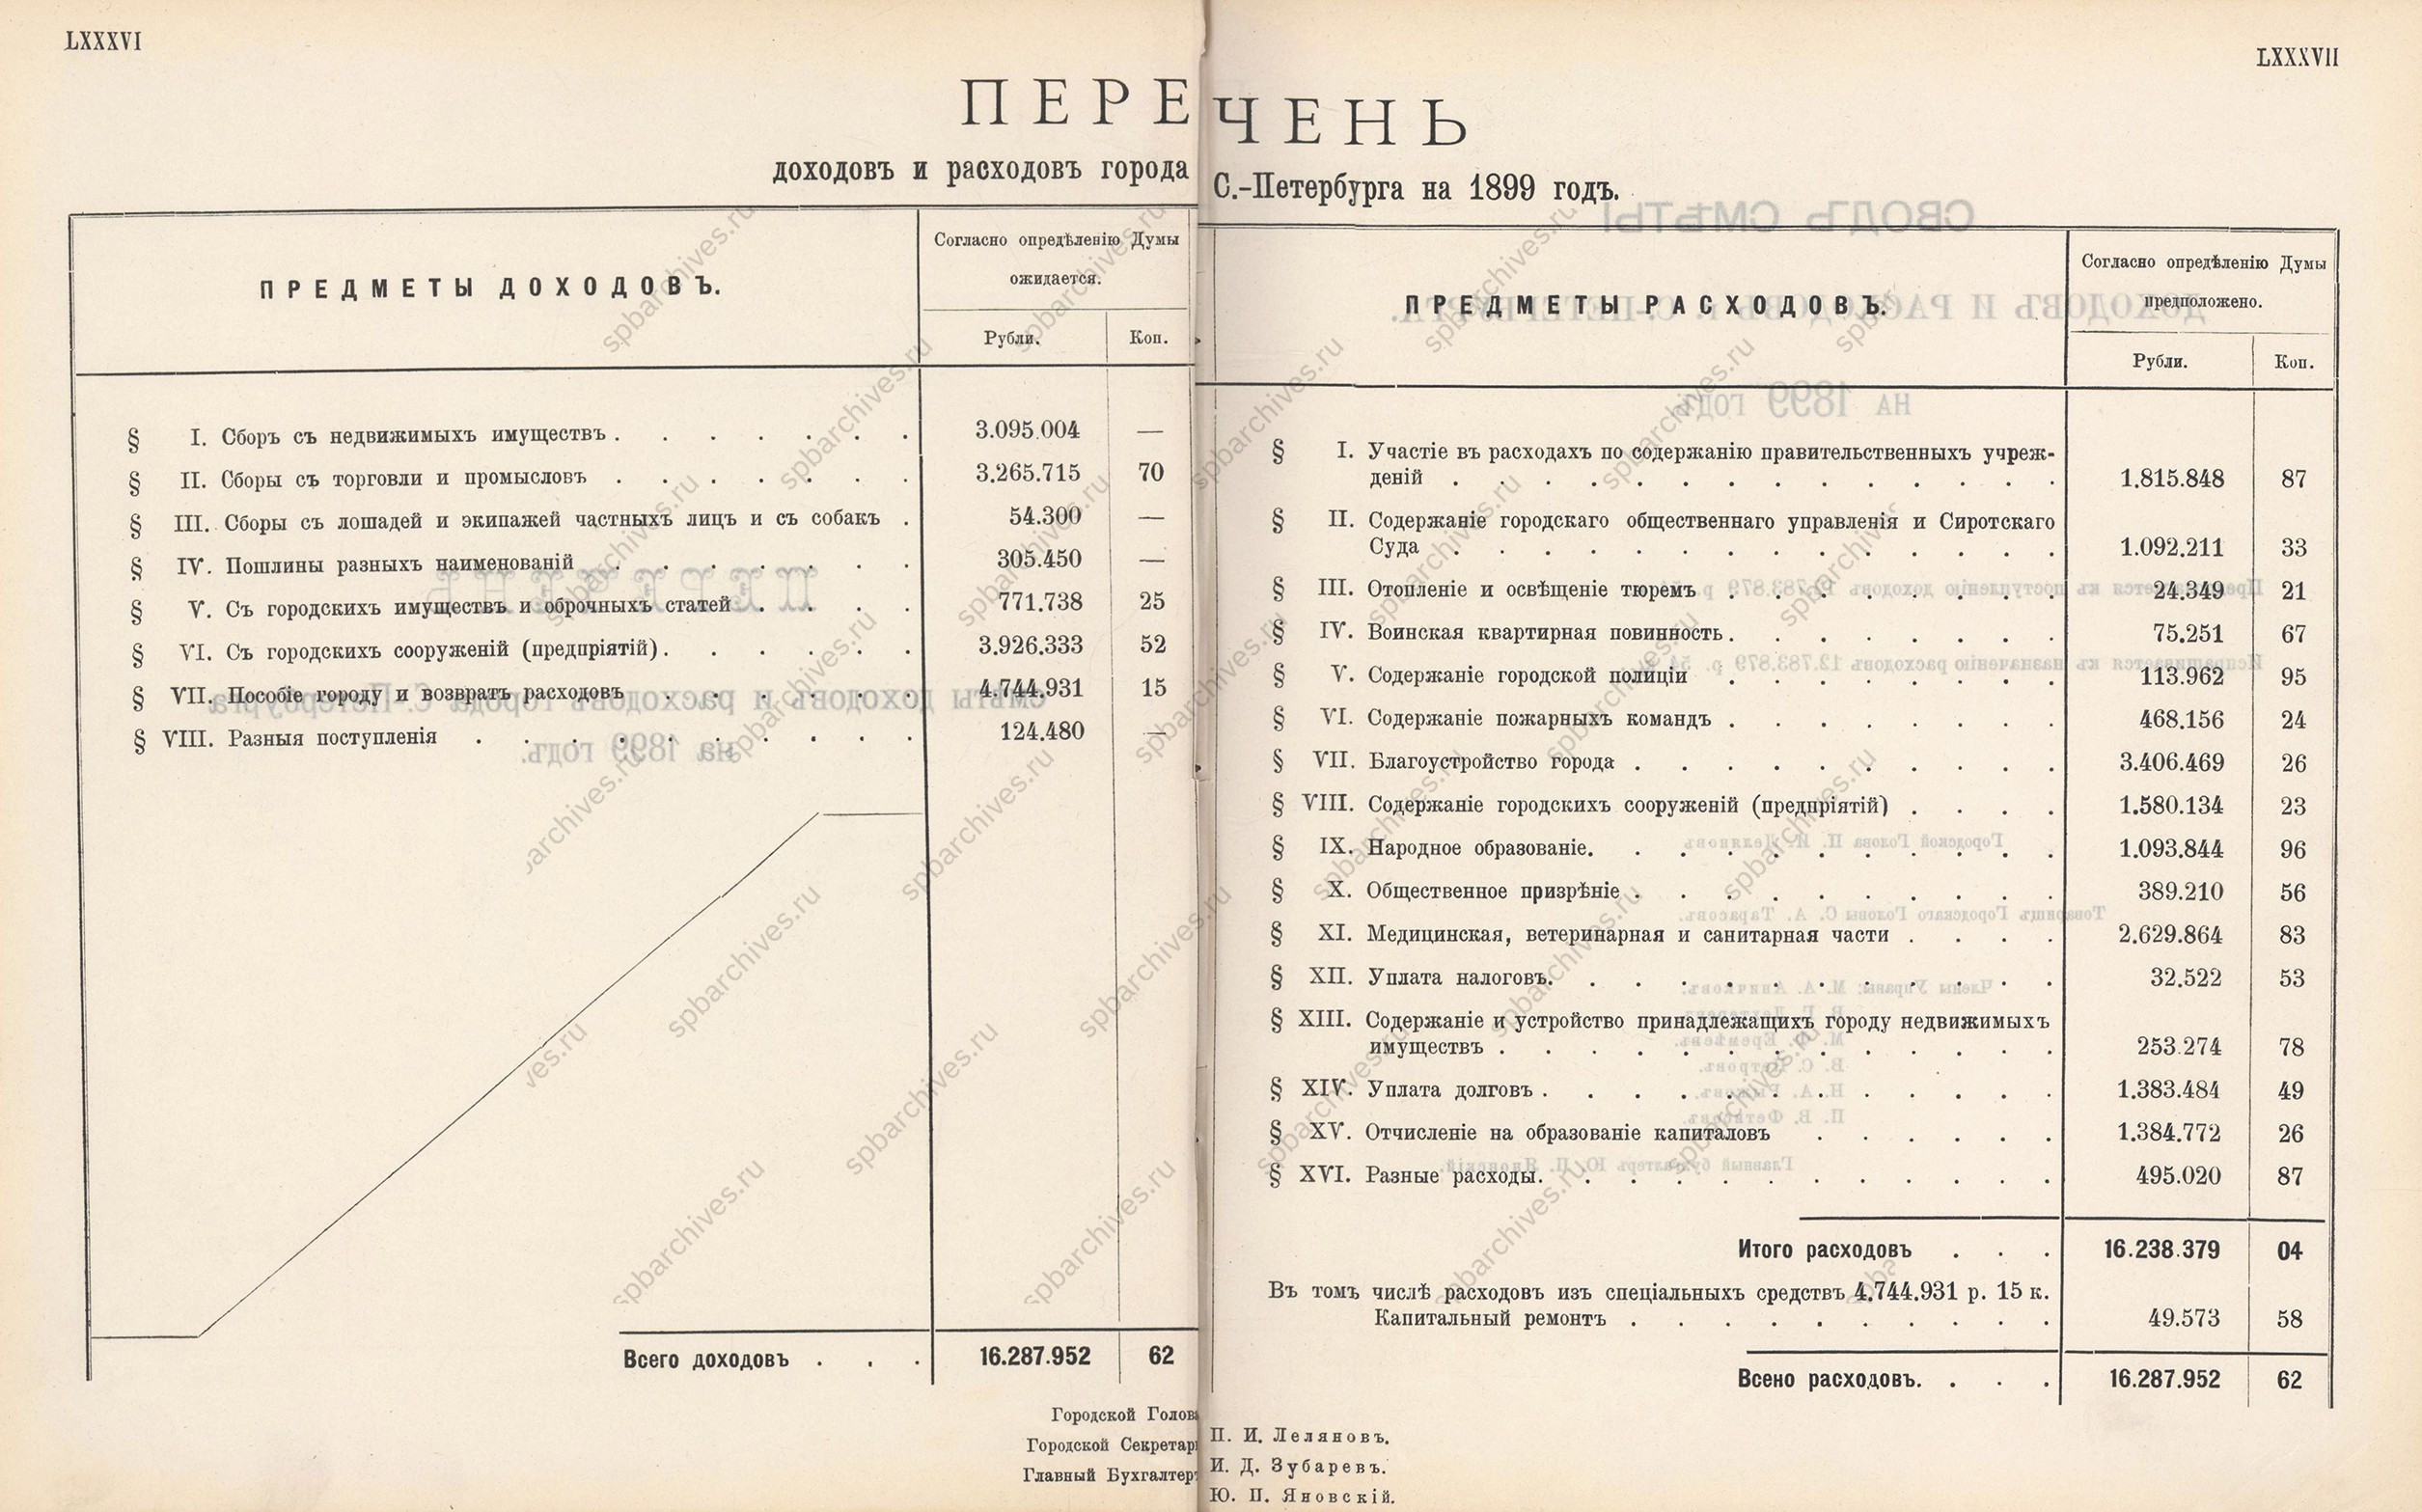 Смета доходов и расходов Санкт-Петербурга за 1899 г.<br />
<em>ЦГИА СПб. НСБ.</em>